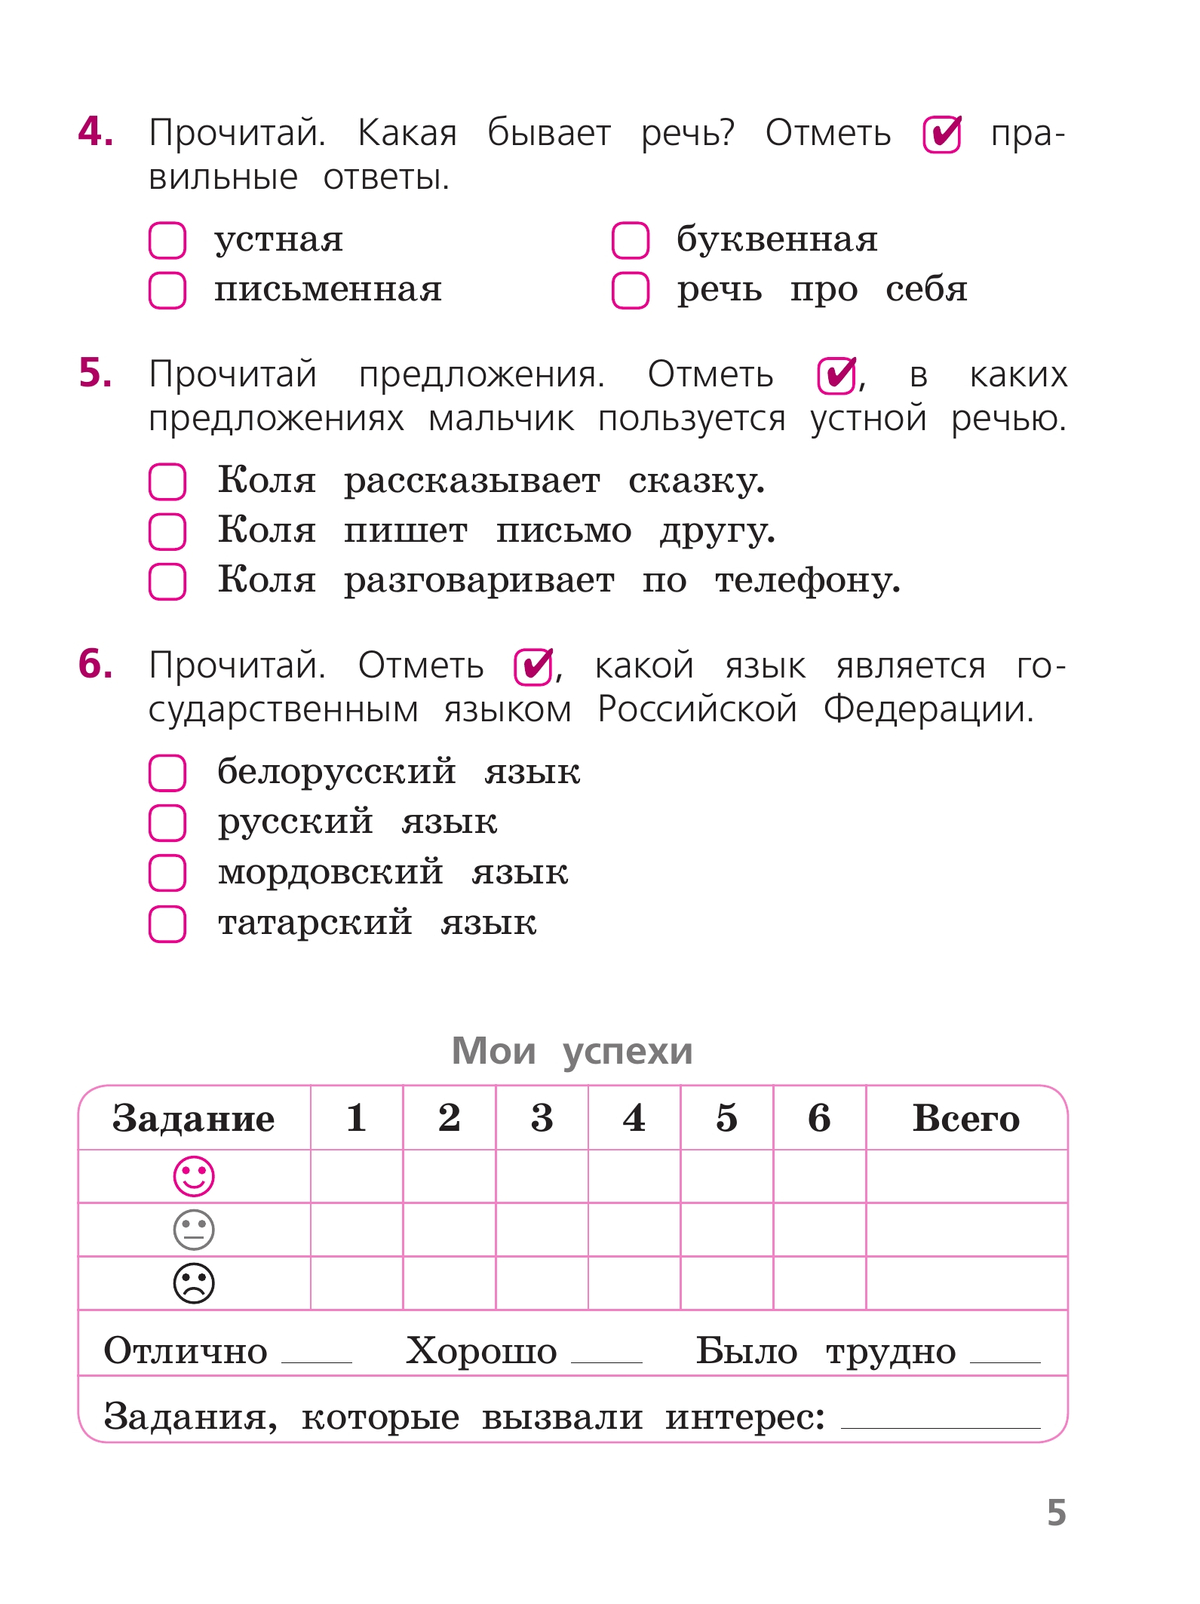 Русский язык. Тетрадь учебных достижений. 1 класс 8